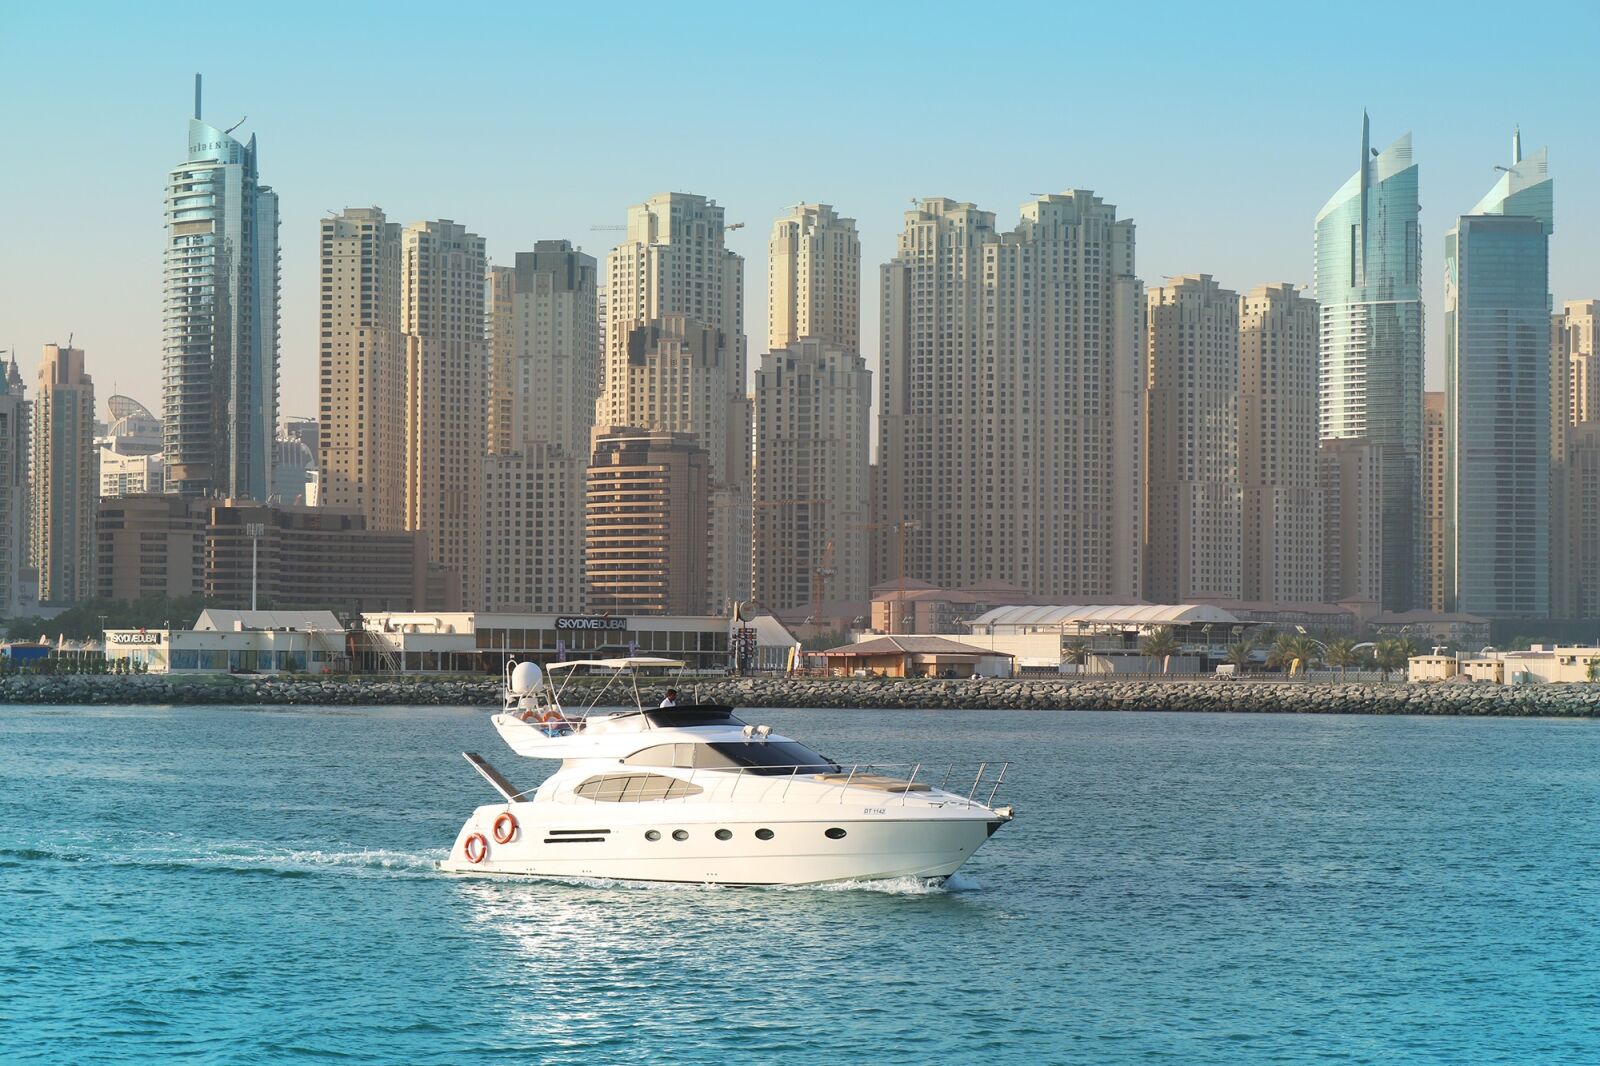 Canon EOS 750D (EOS Rebel T6i / EOS Kiss X8i) sample photo. Dubai, marina, yacht photography